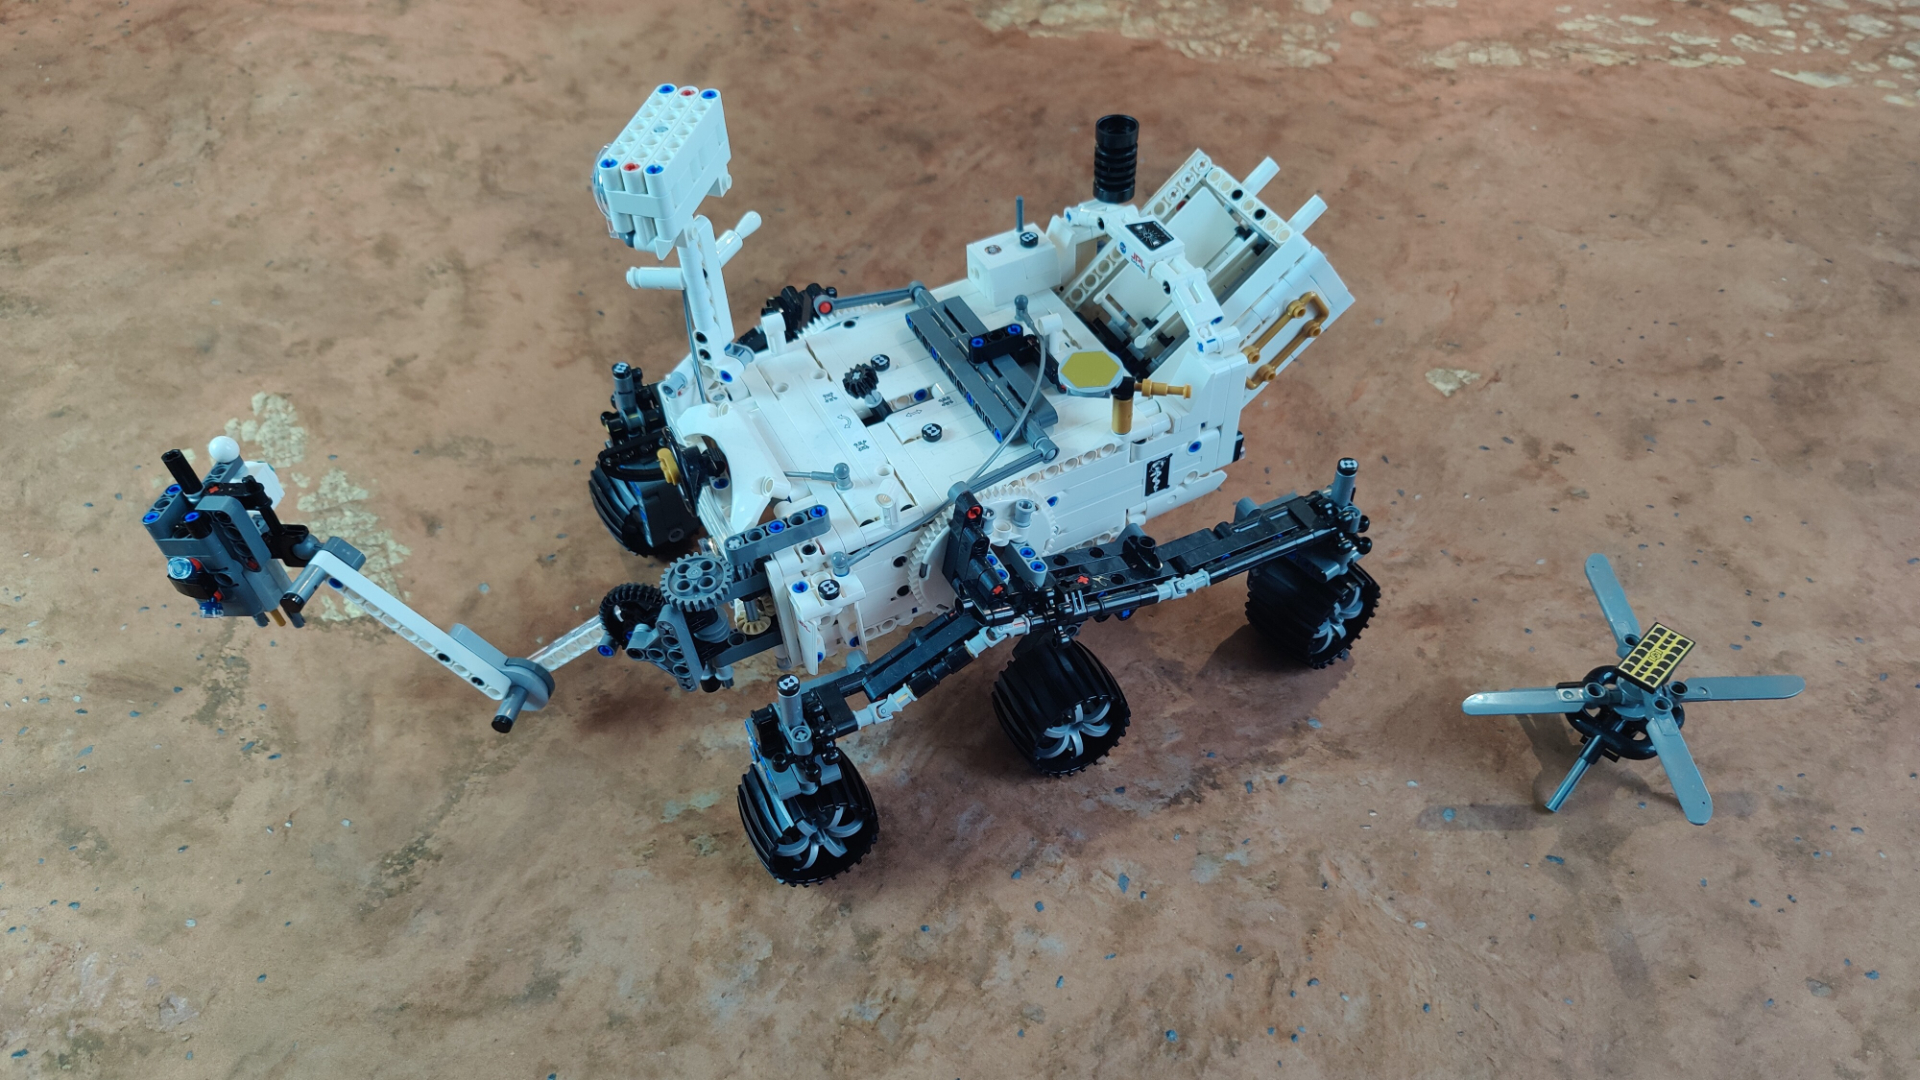 Lego NASA Mars Rover Perseverance review